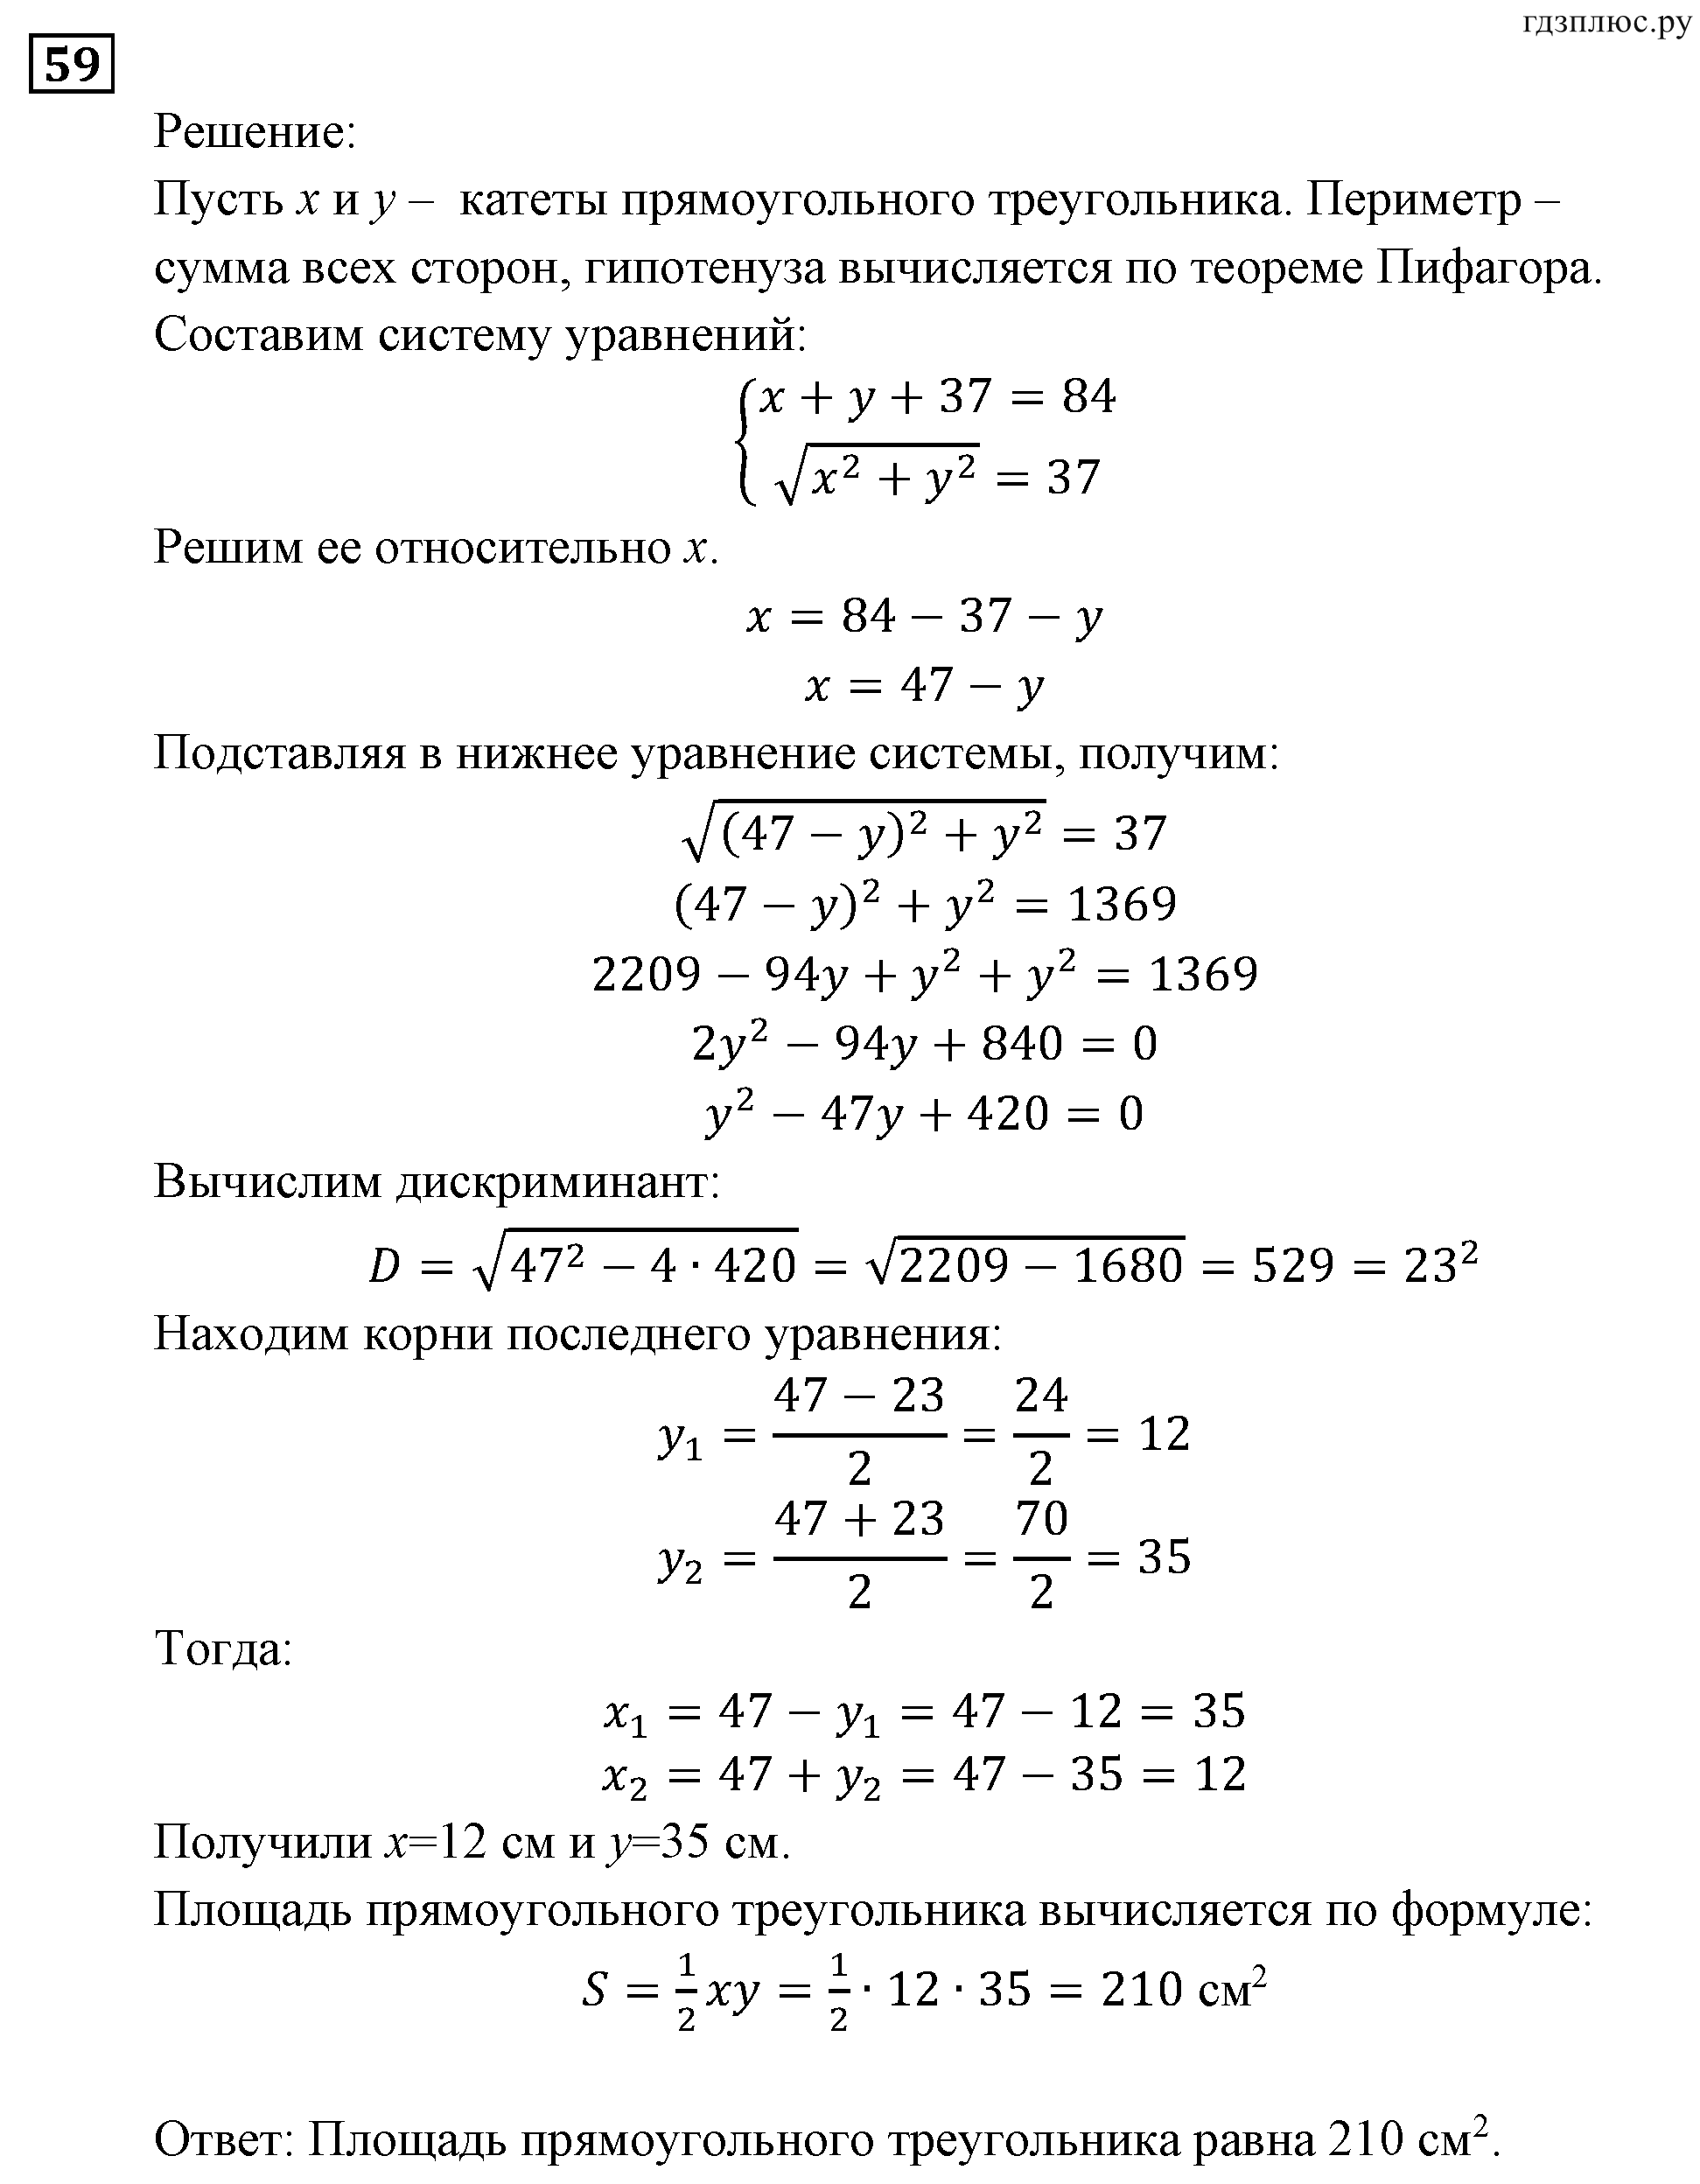 задача №59 алгебра 9 класс Мордкович